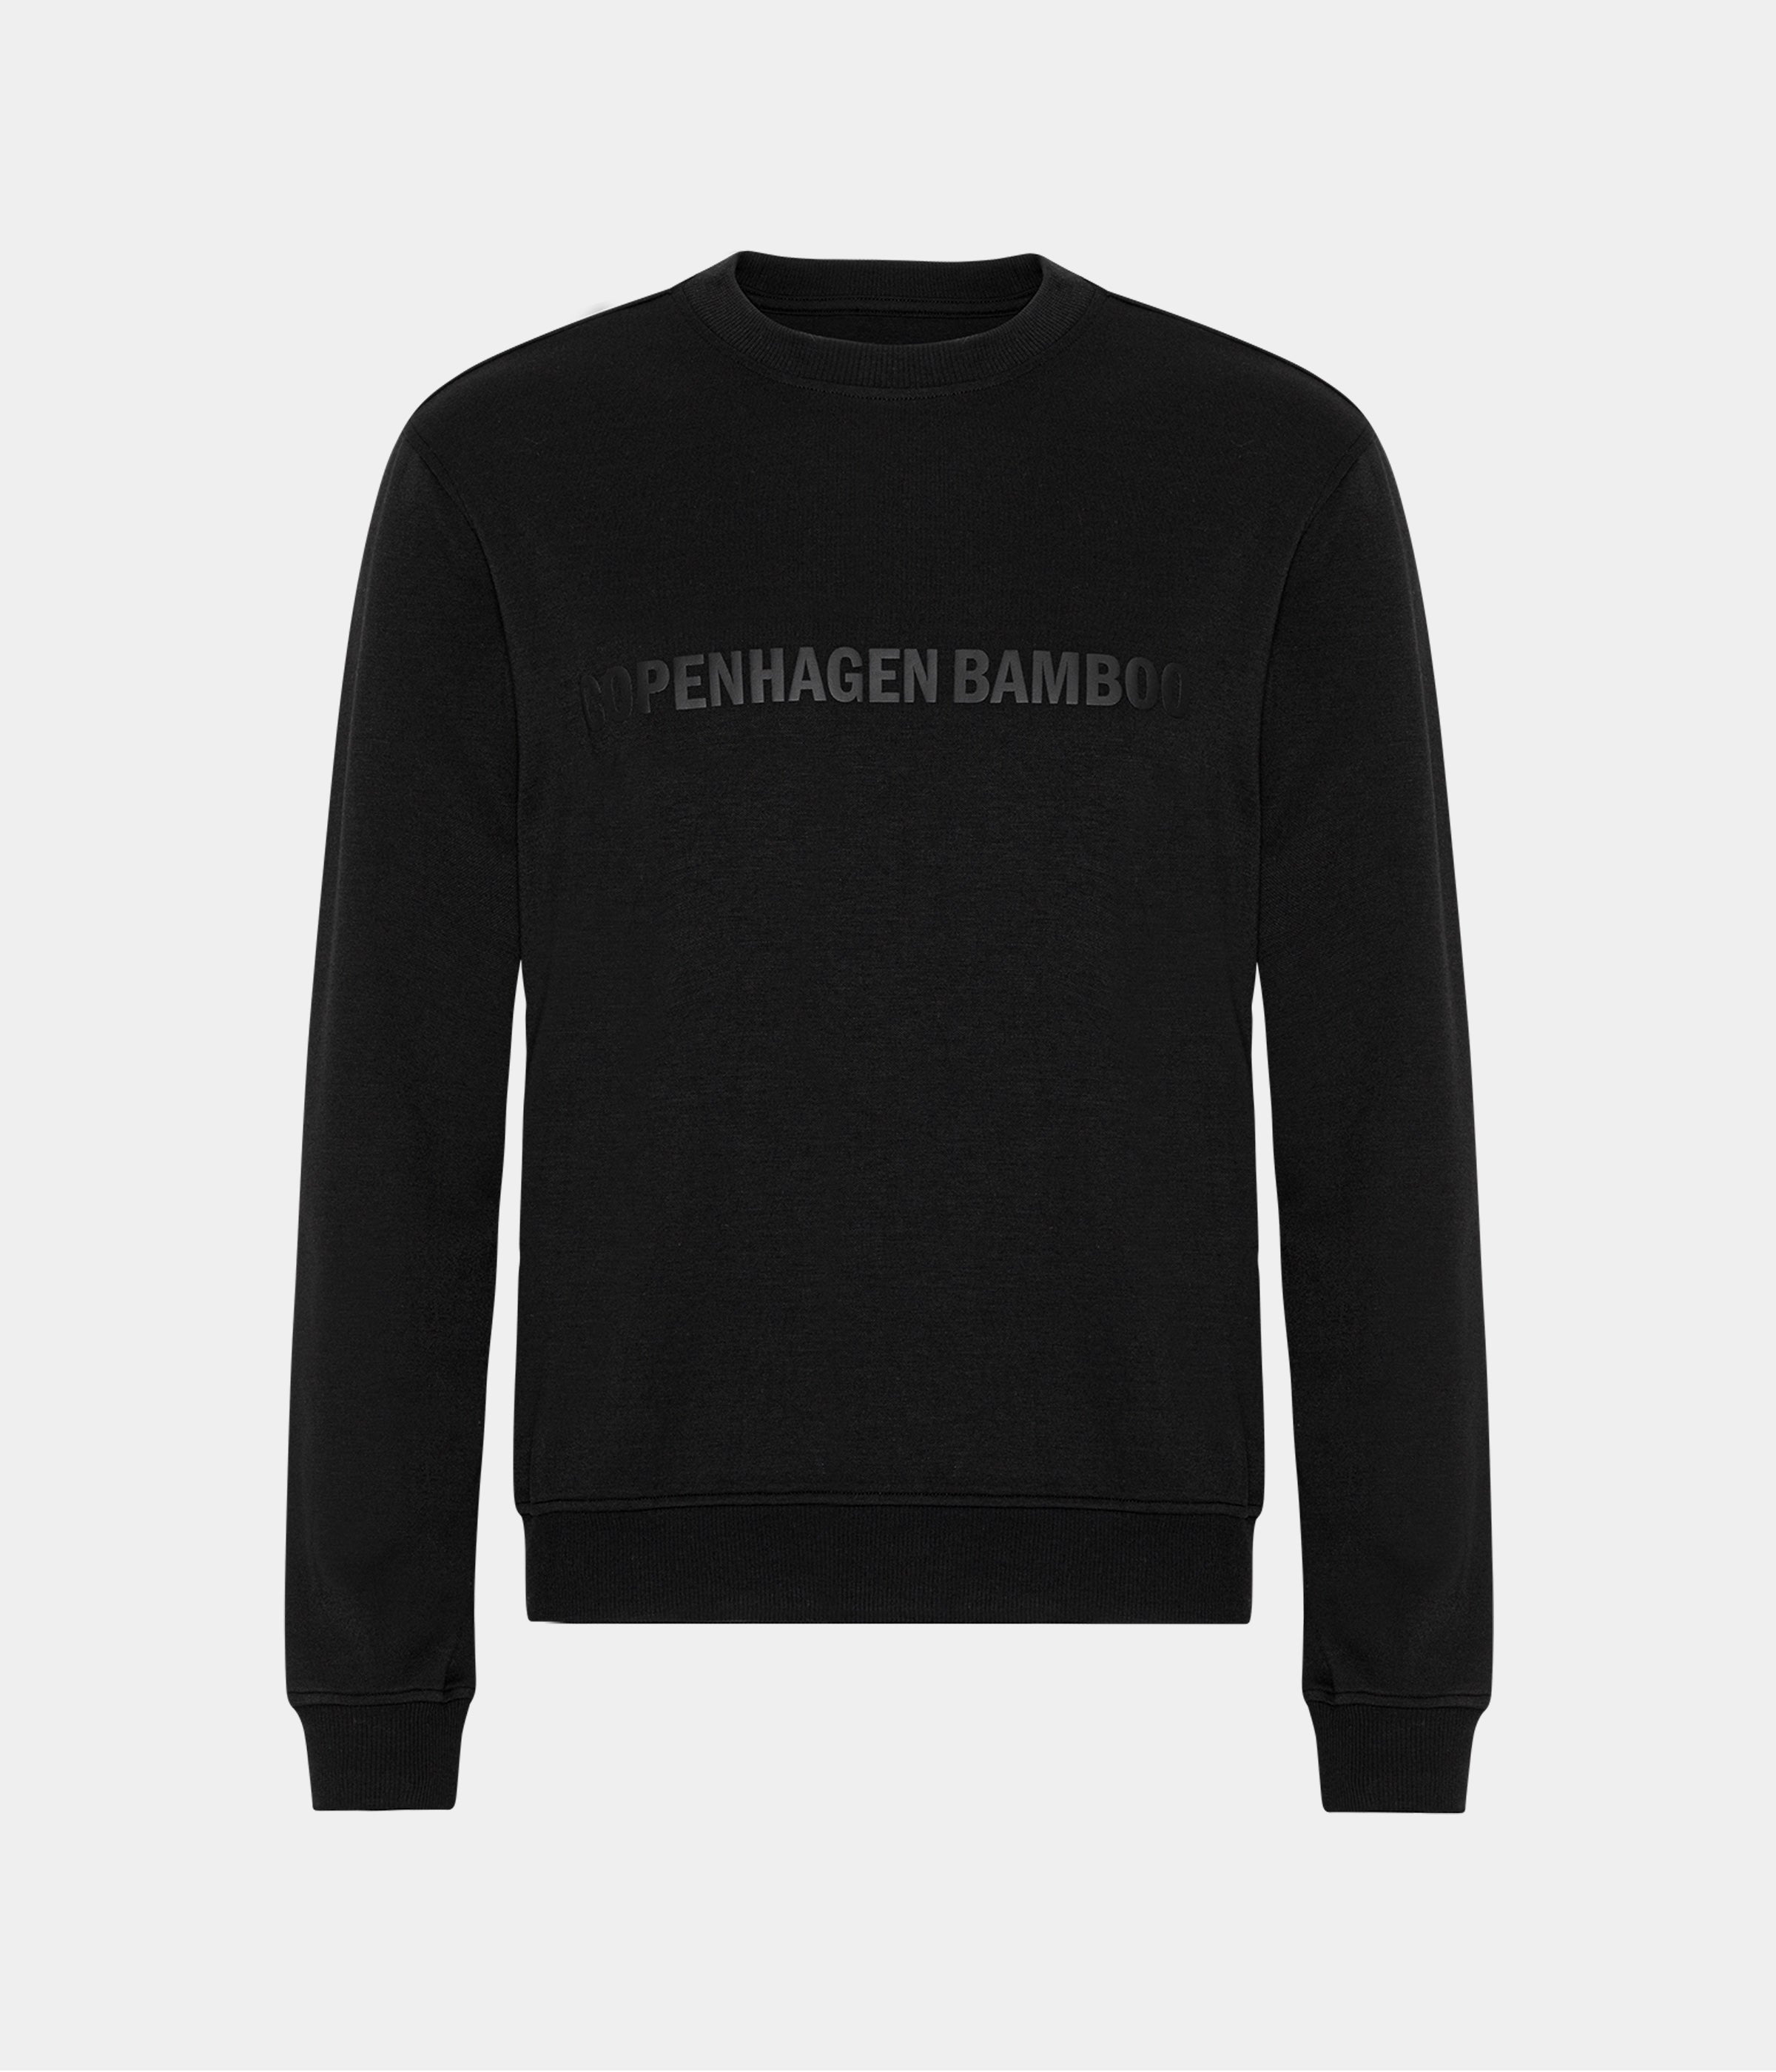 Billede af Sort bambus sweatshirt til mænd med logo fra Copenhagen Bamboo, XS